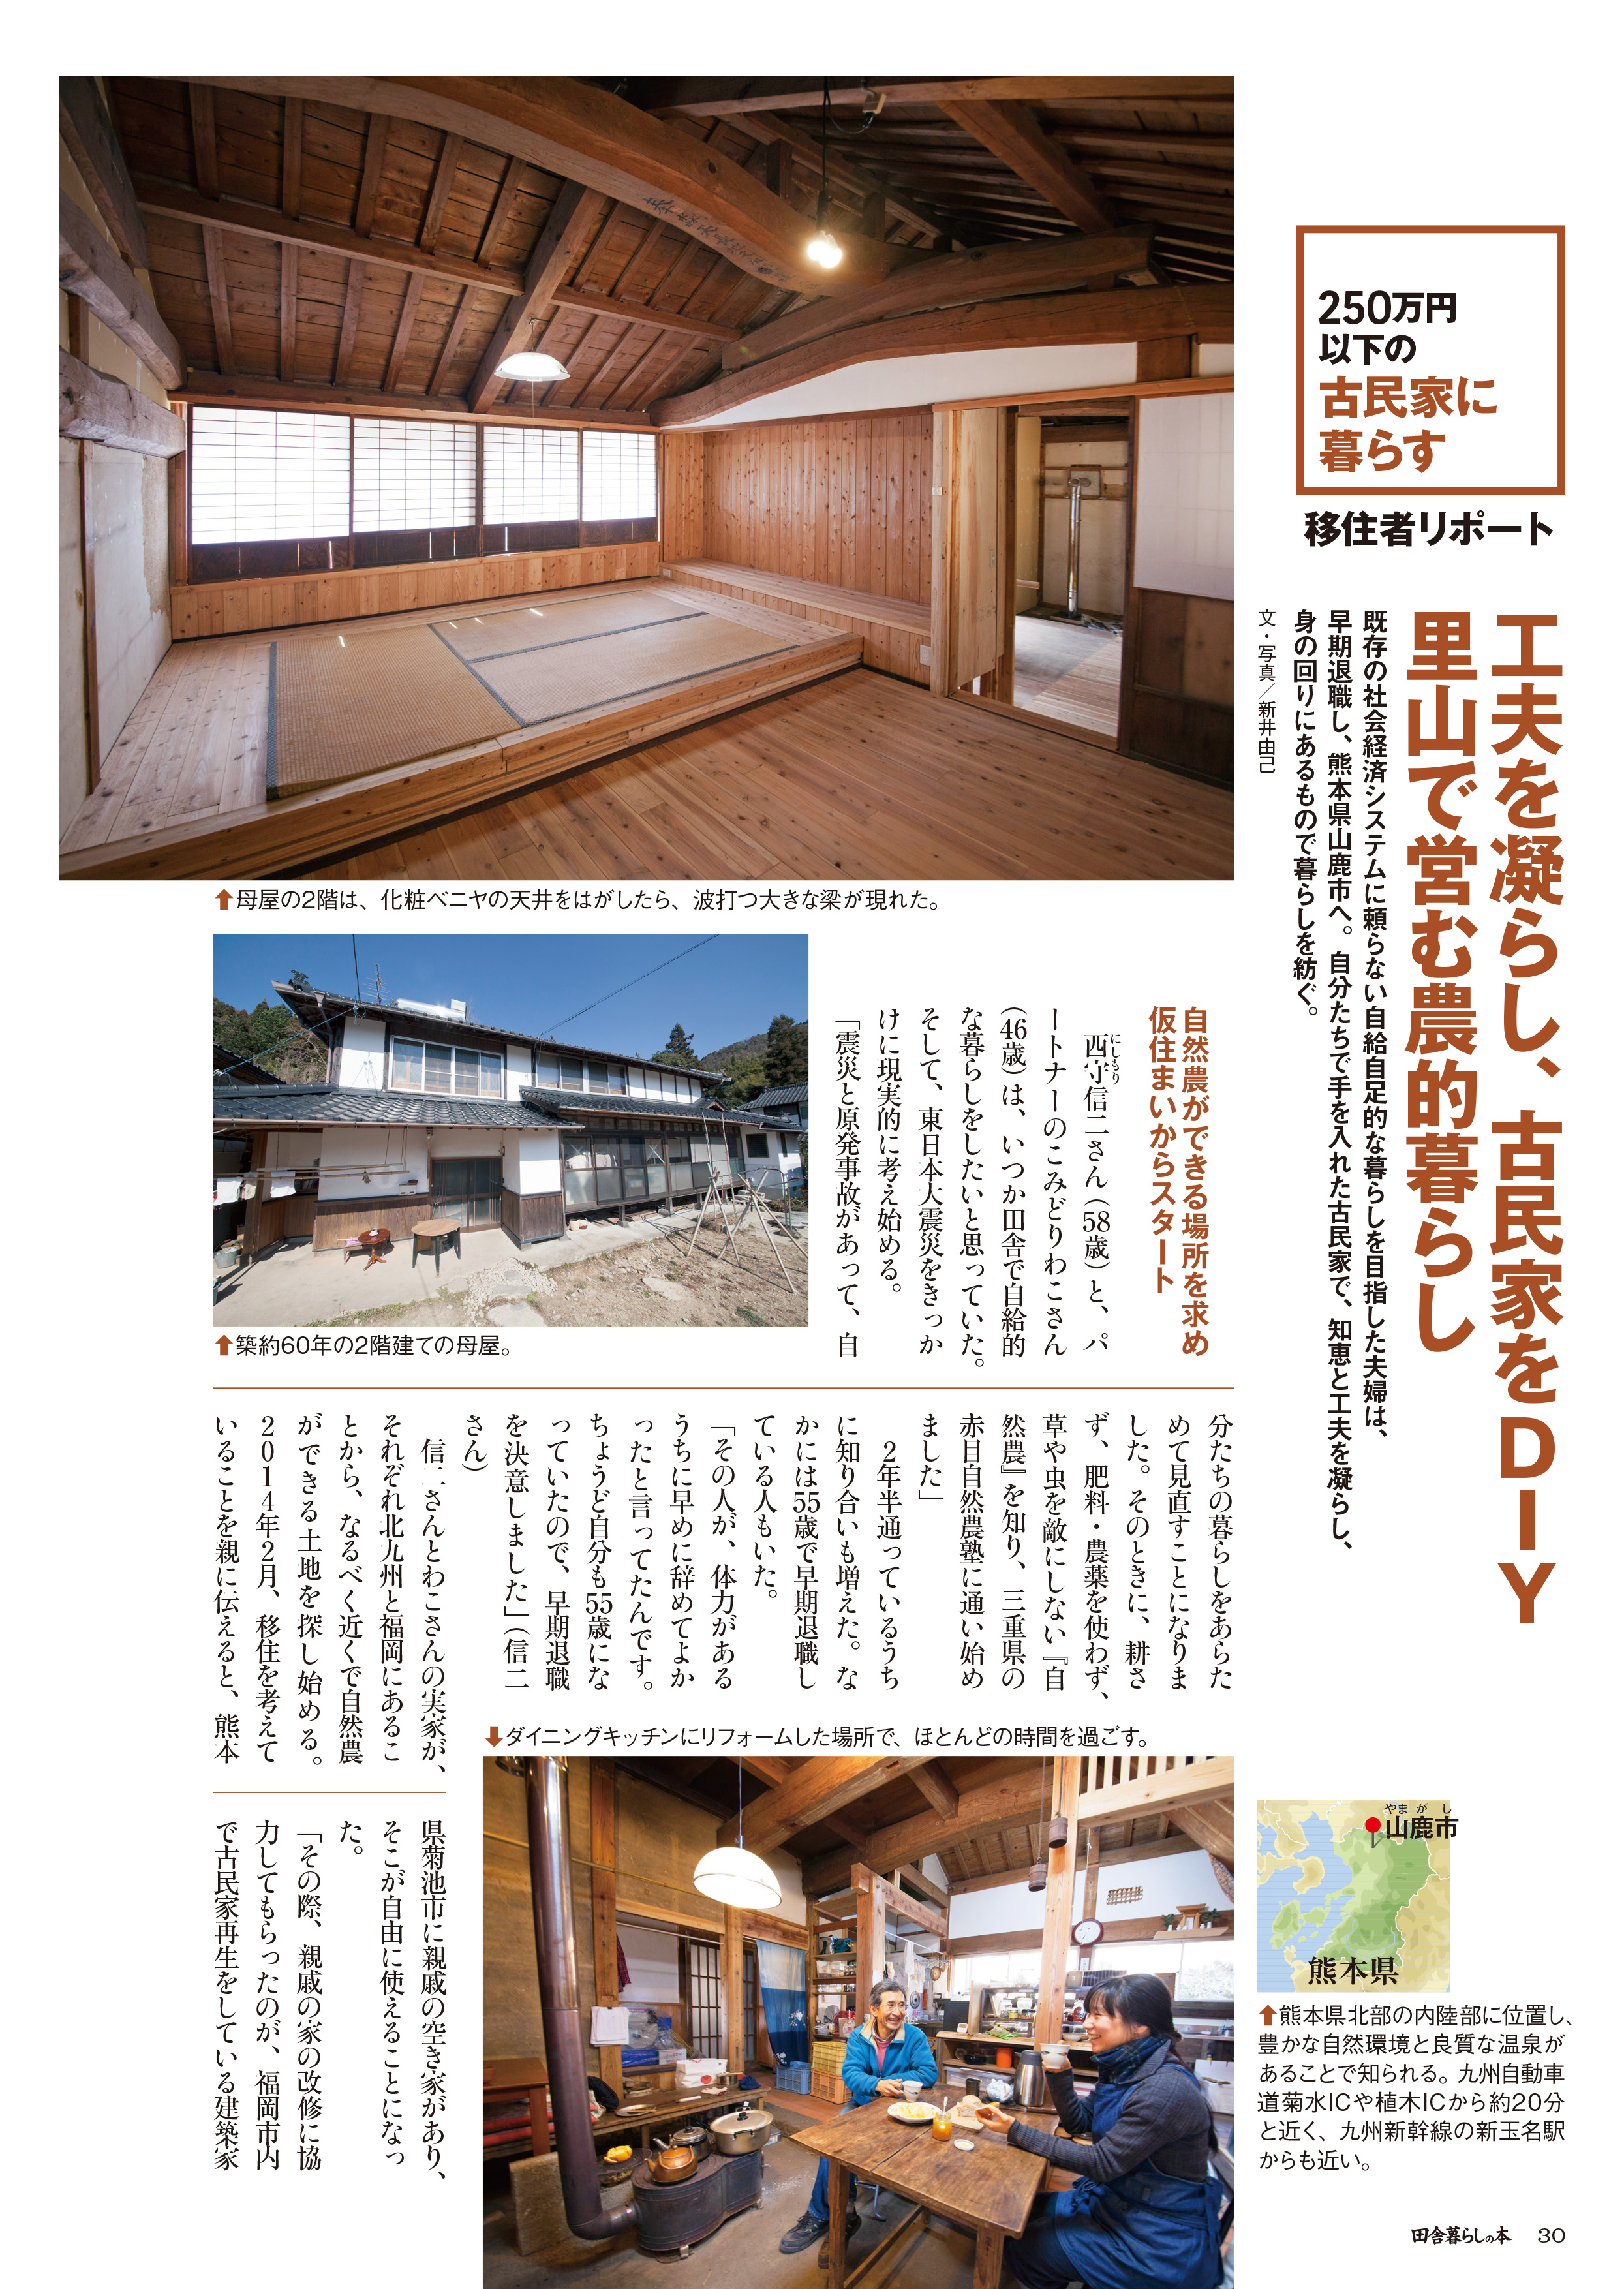 250万円古民家を夫婦でdiy 熊本の里山で営む自然暮らし 株式会社 宝島社のプレスリリース